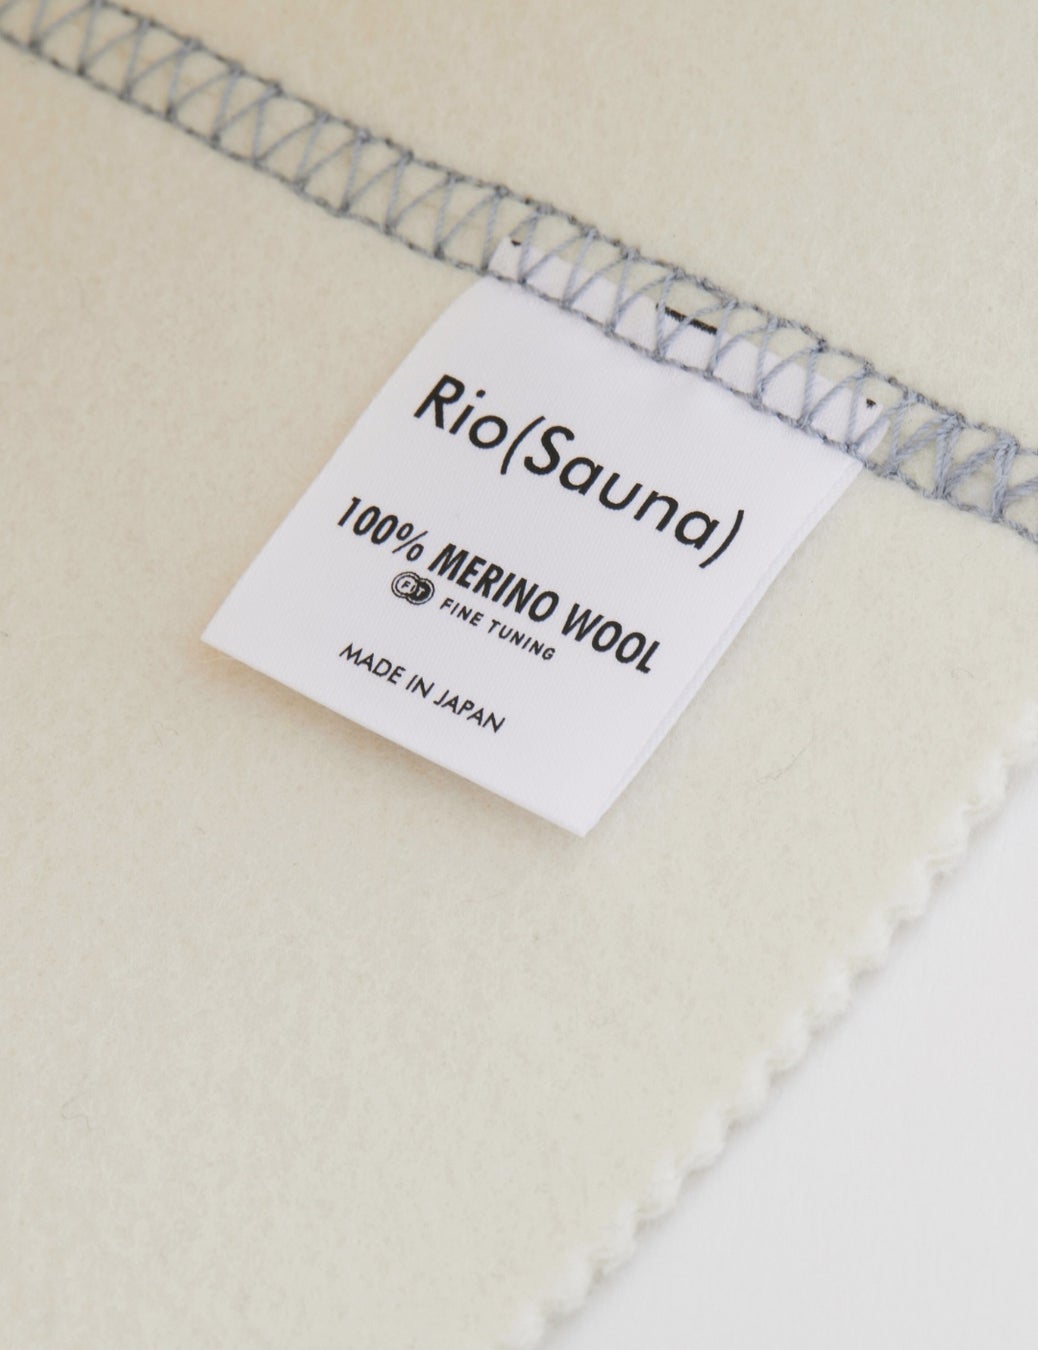 高級羊毛(メリノウール)の国産サウナハット「S-HAT」新モデルを販売開始。